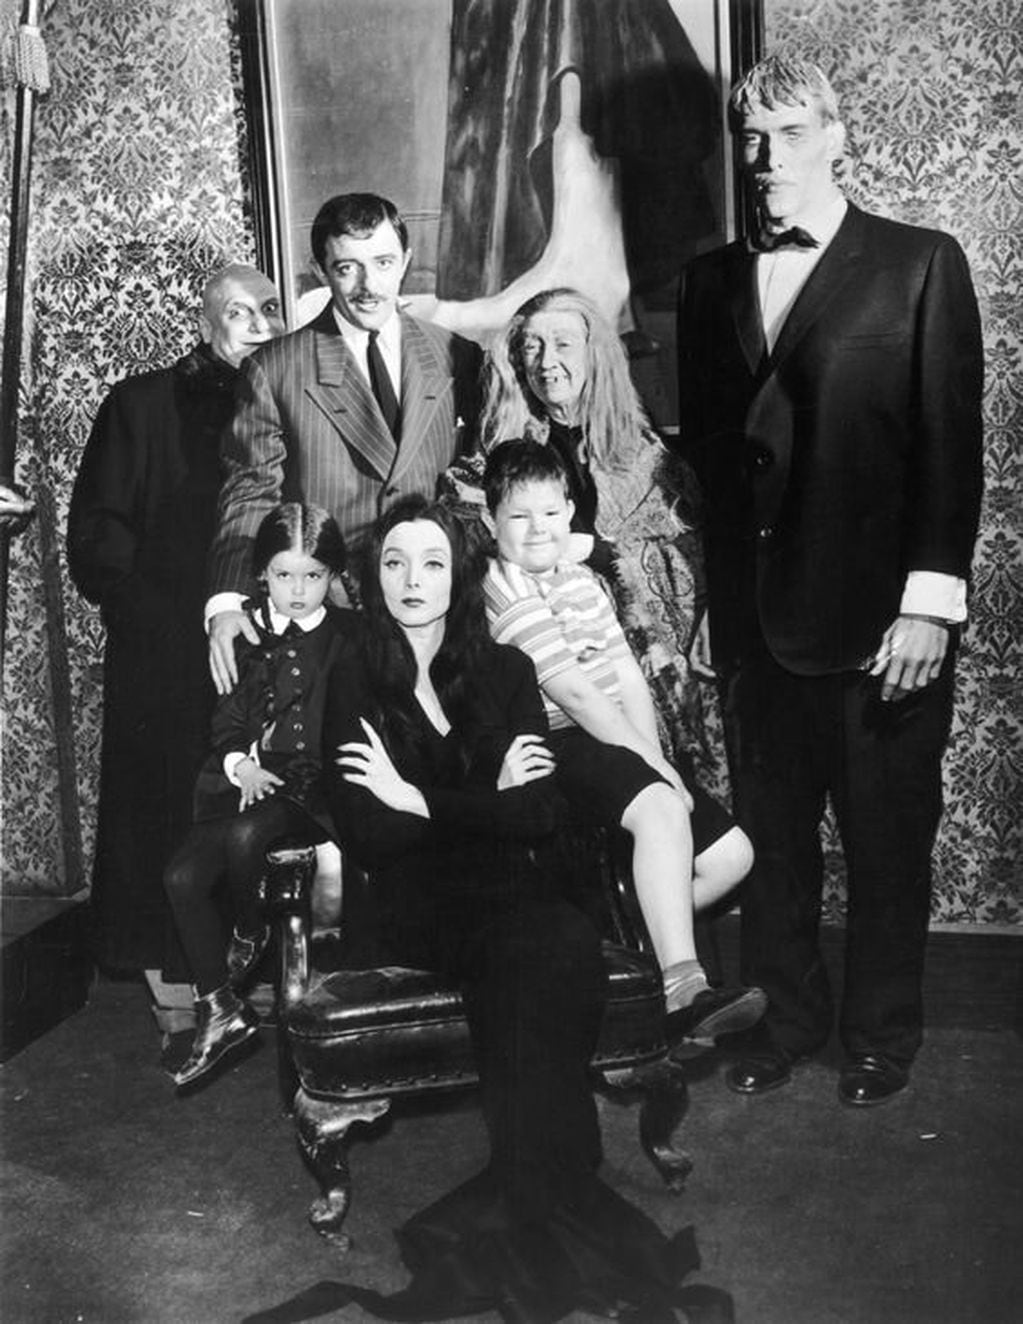 Loring era la última intérprete de la primera “Familia Addams” que se encontraba con vida.